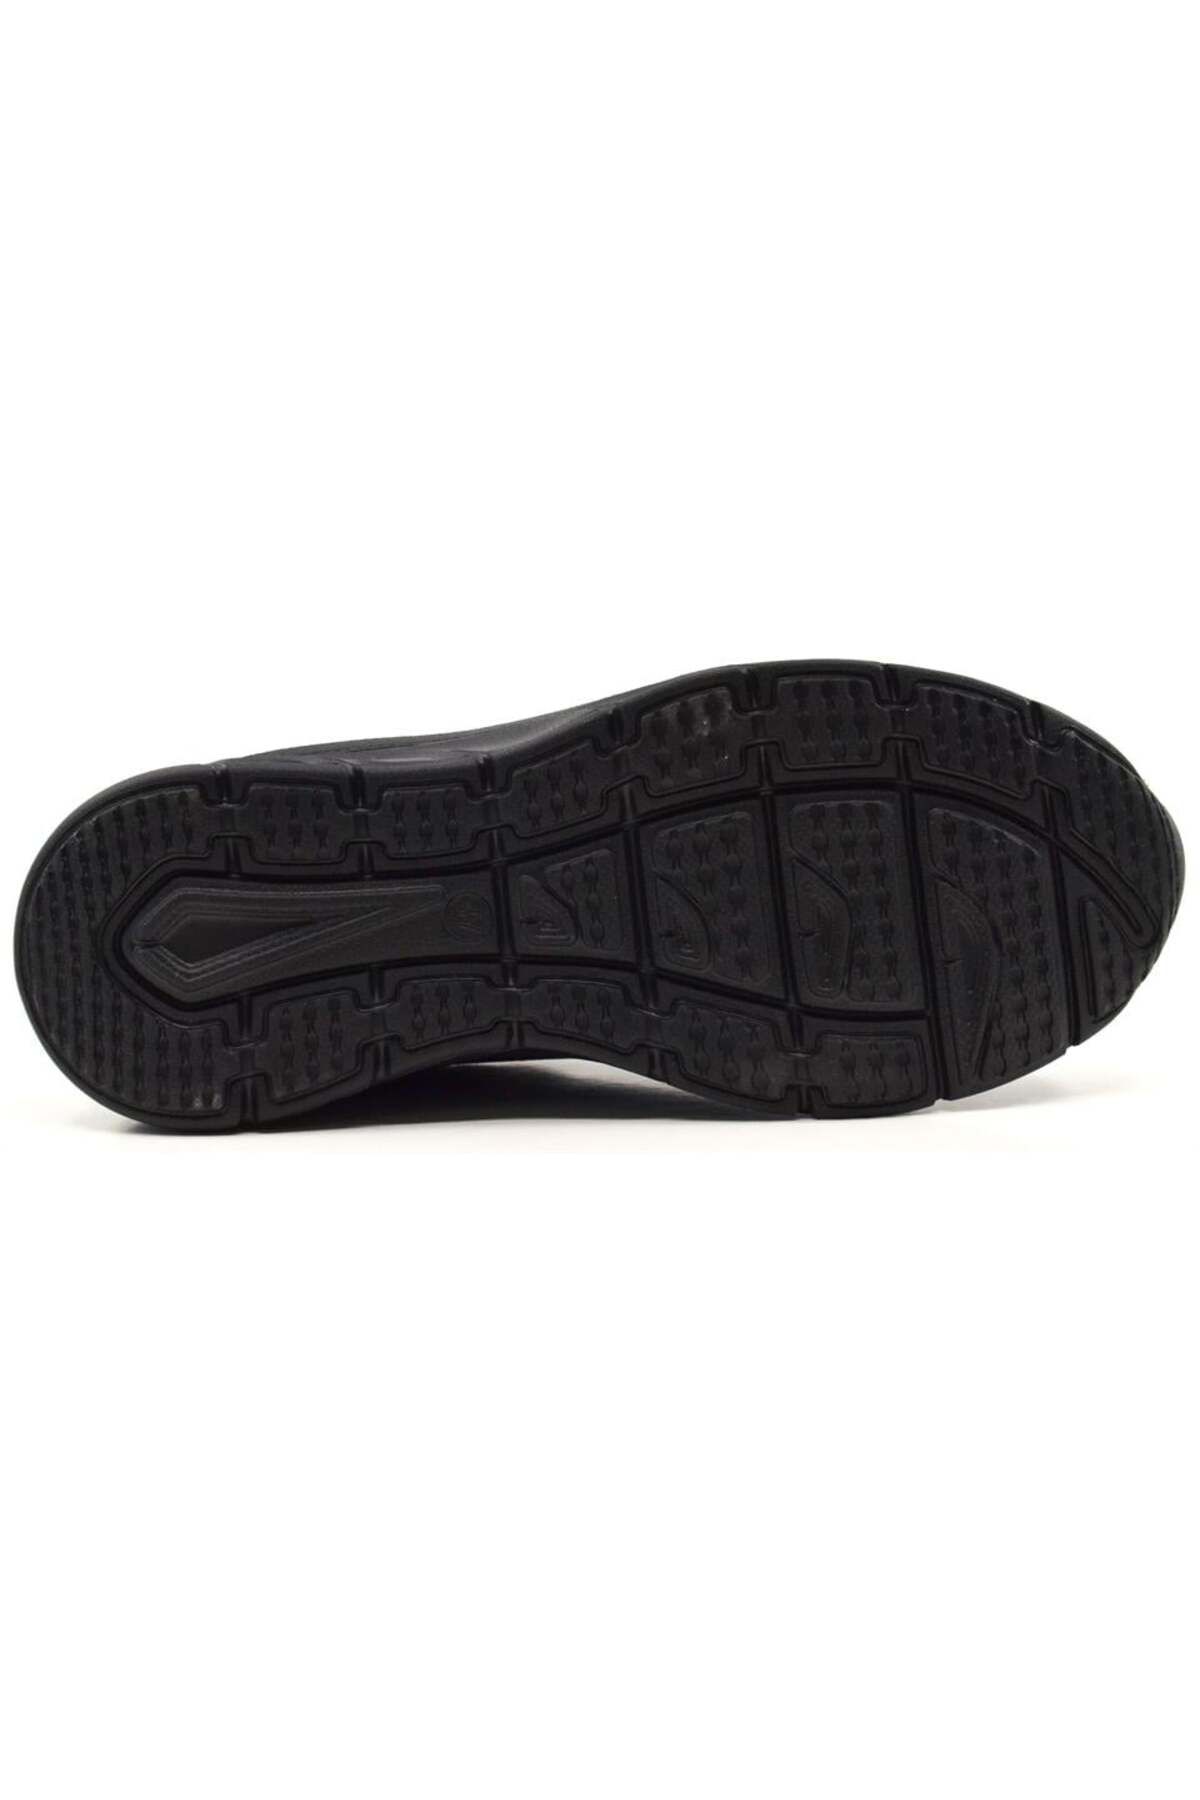 KİNG PAOLO King Paolo D5090 Nuvales - Siyah - Kadın Ayakkabı,örgü Yürüyüş Ayakkabısı